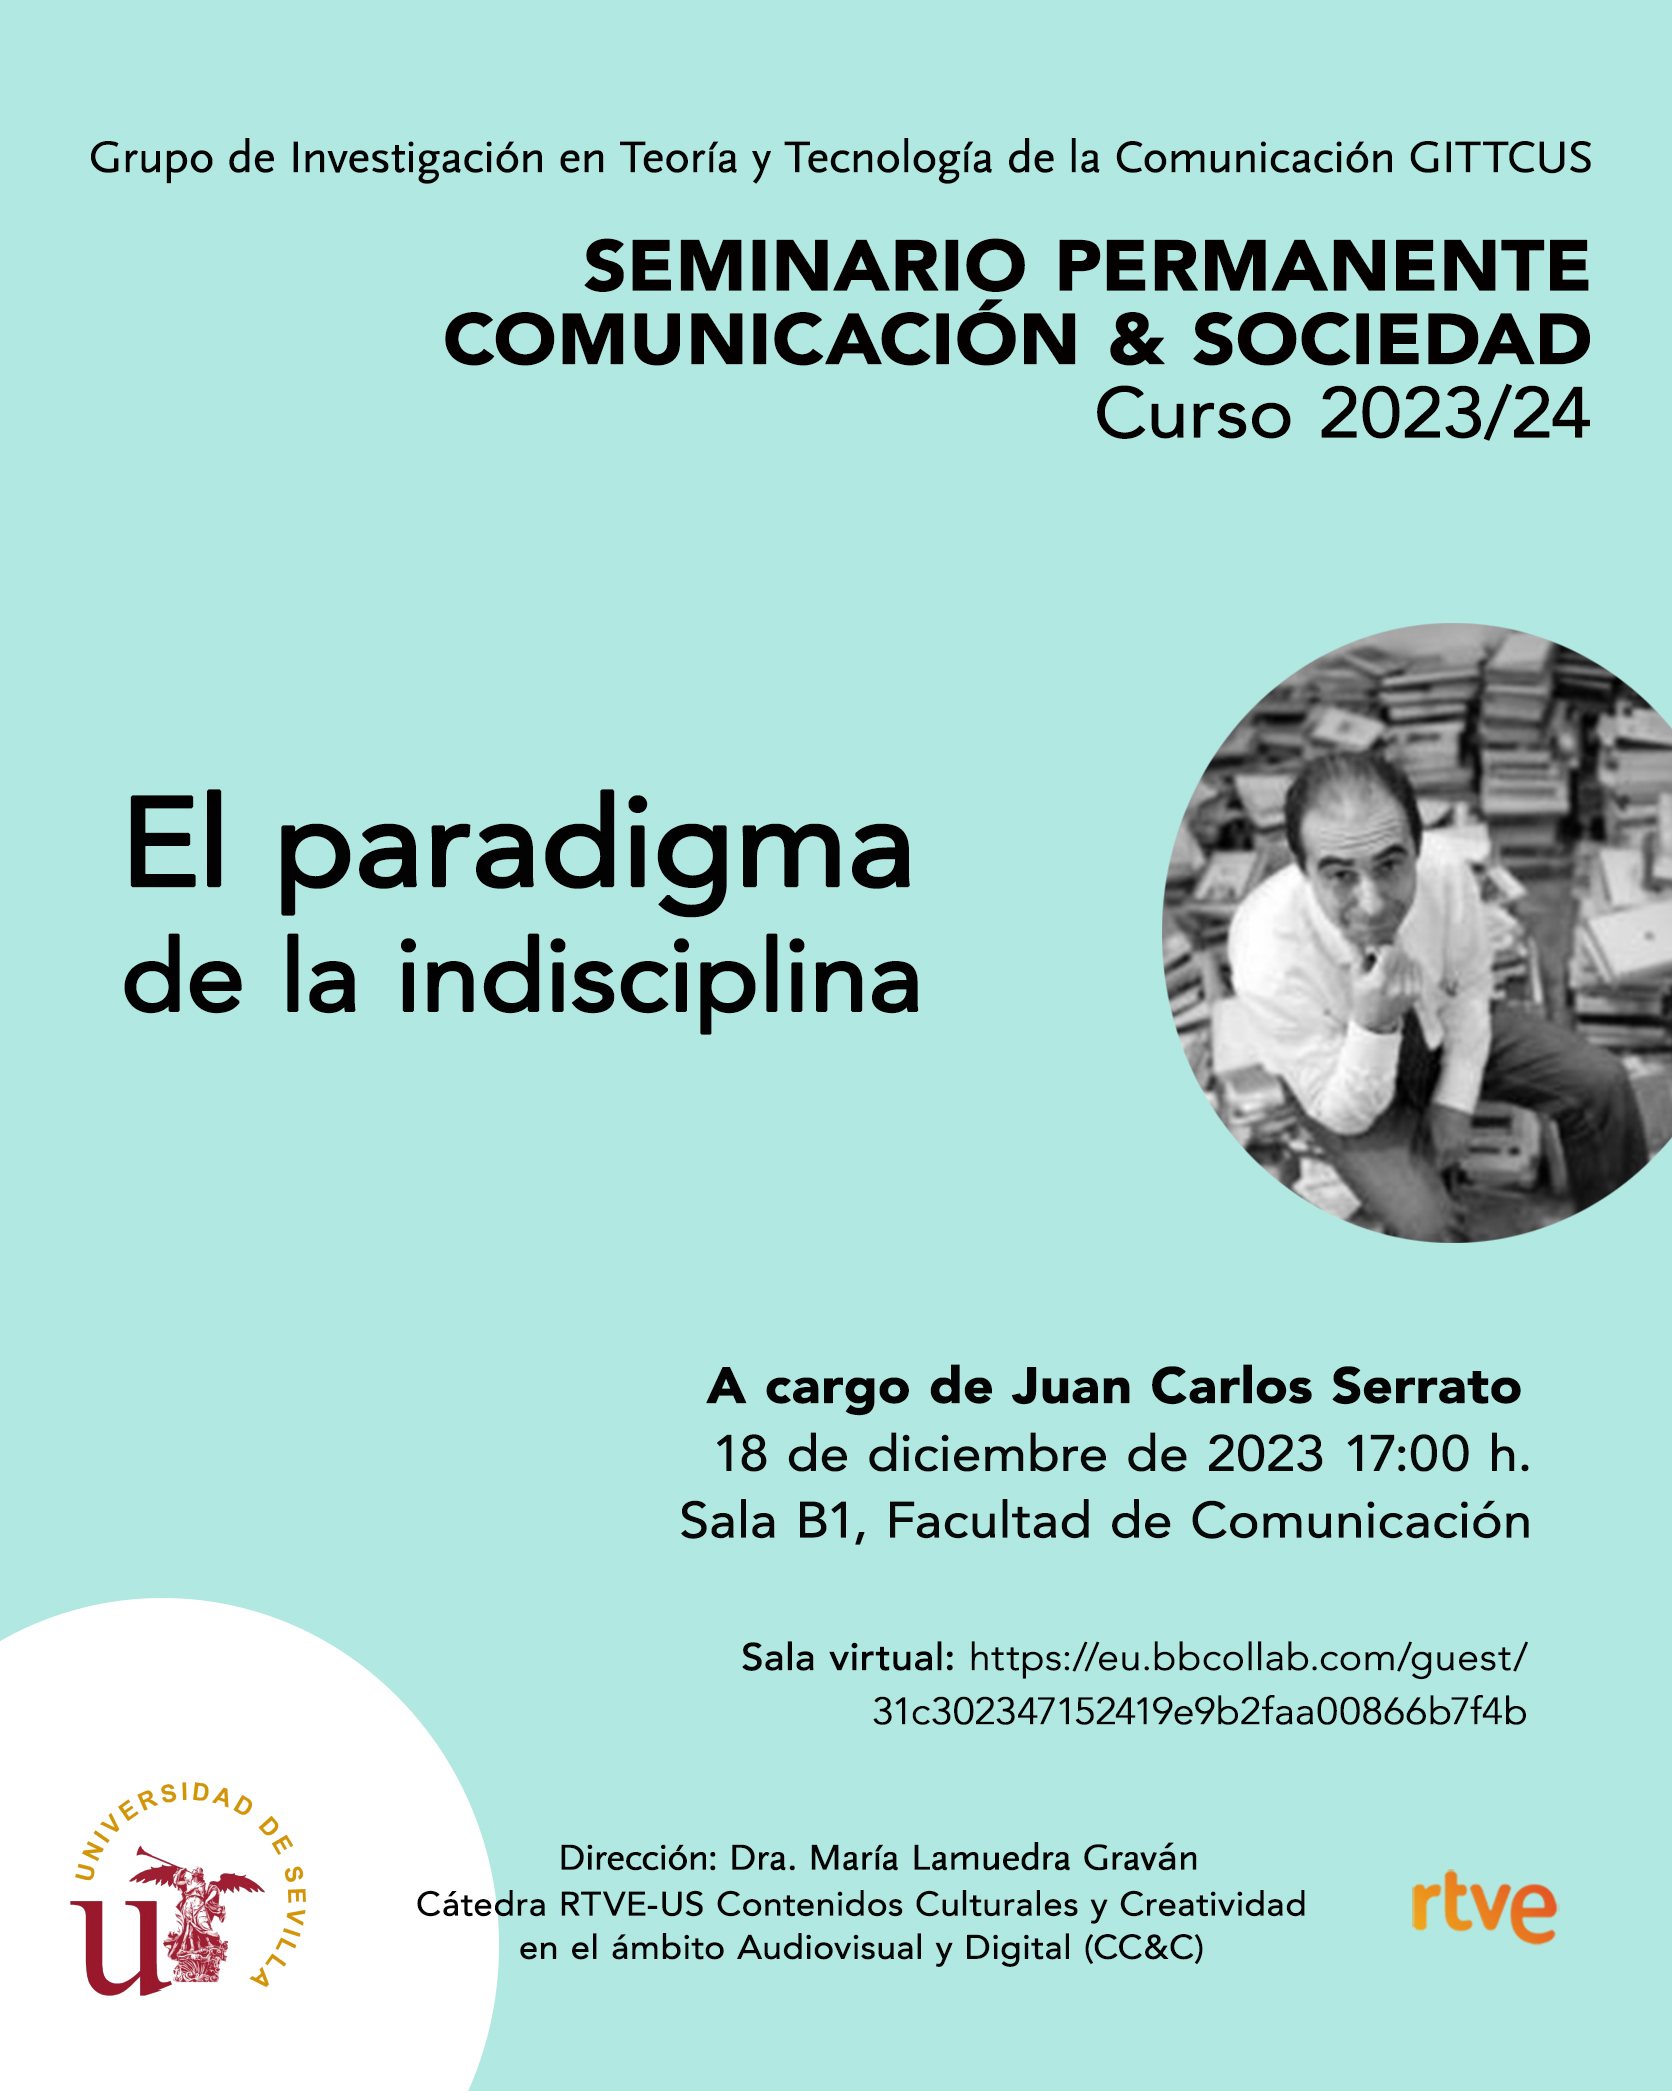 El paradigma de la indisciplina. Juan Carlos Fernández Serrato.